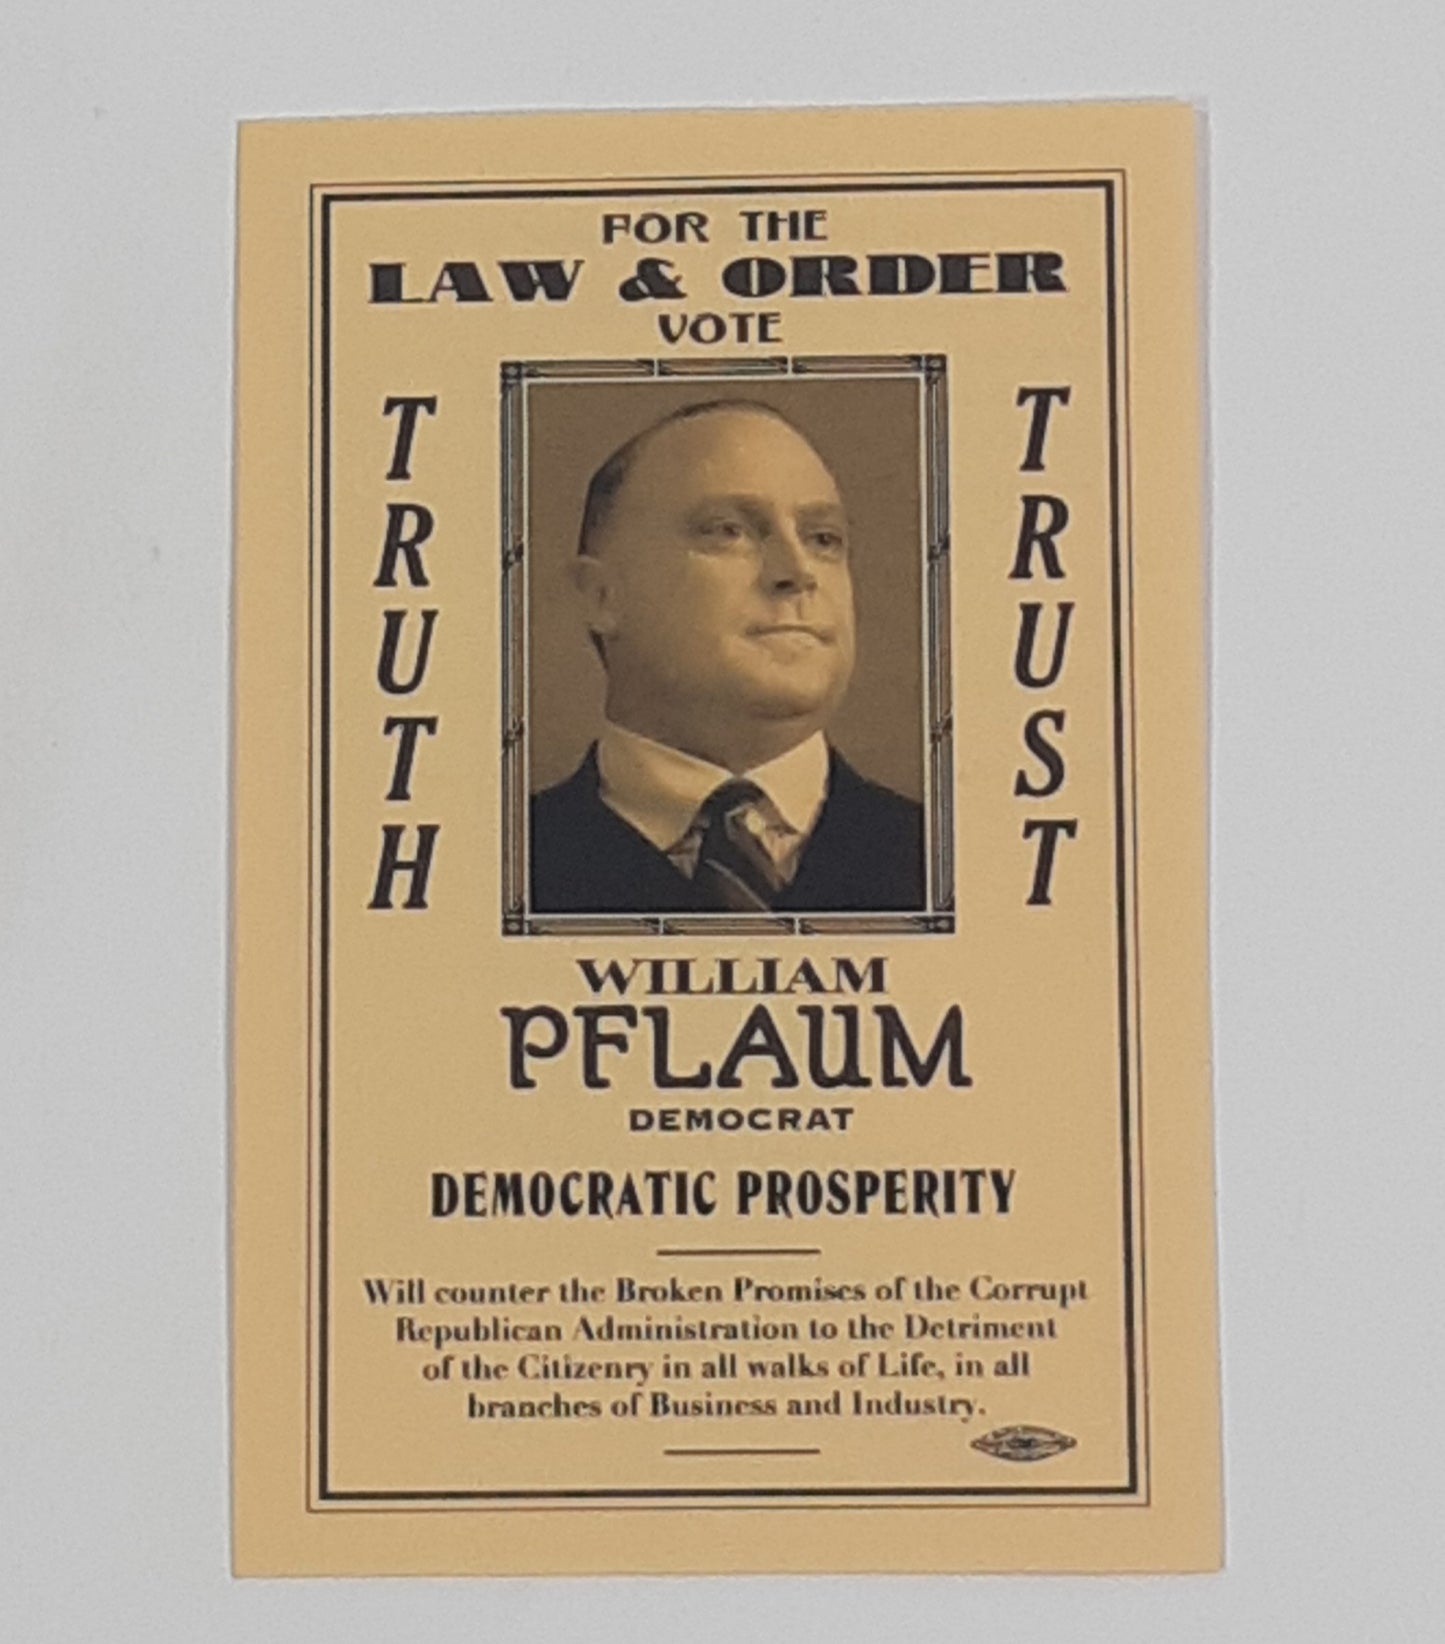 Boardwalk Empire: Vote William Pflaum Flyer